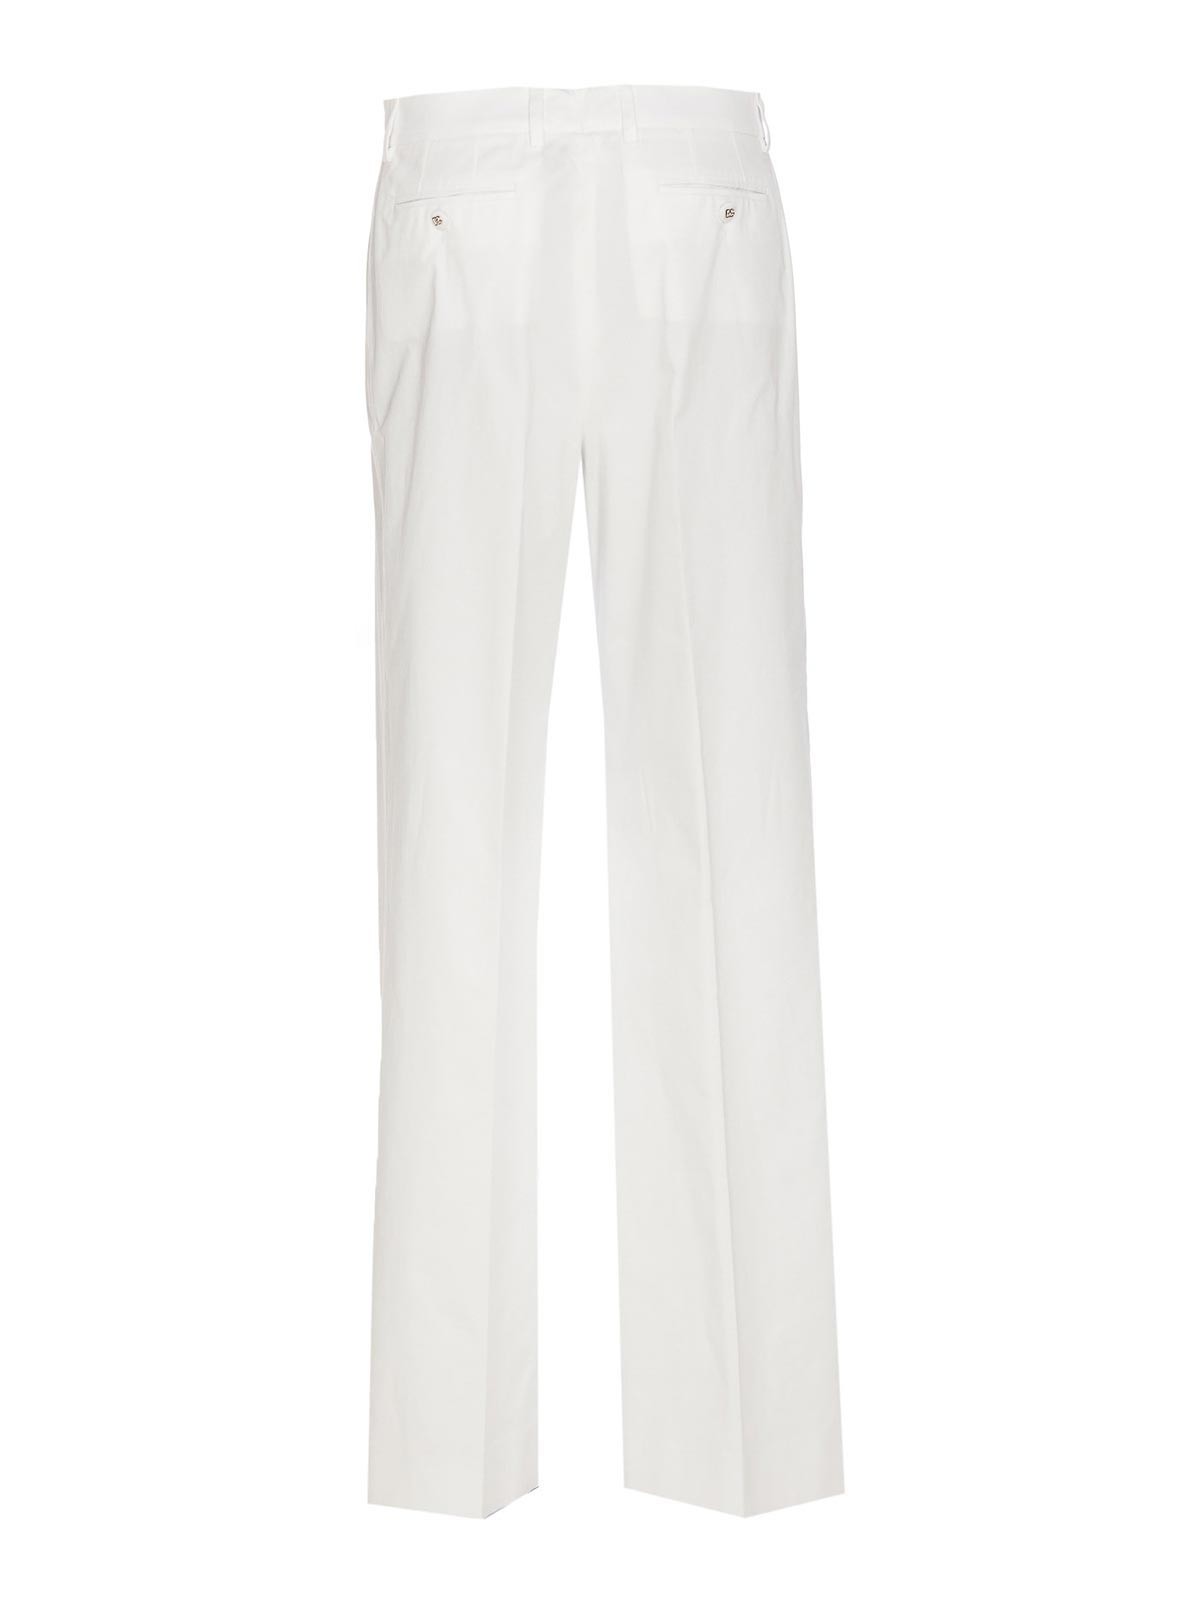 Shop Dolce & Gabbana Shorts - Blanco In White